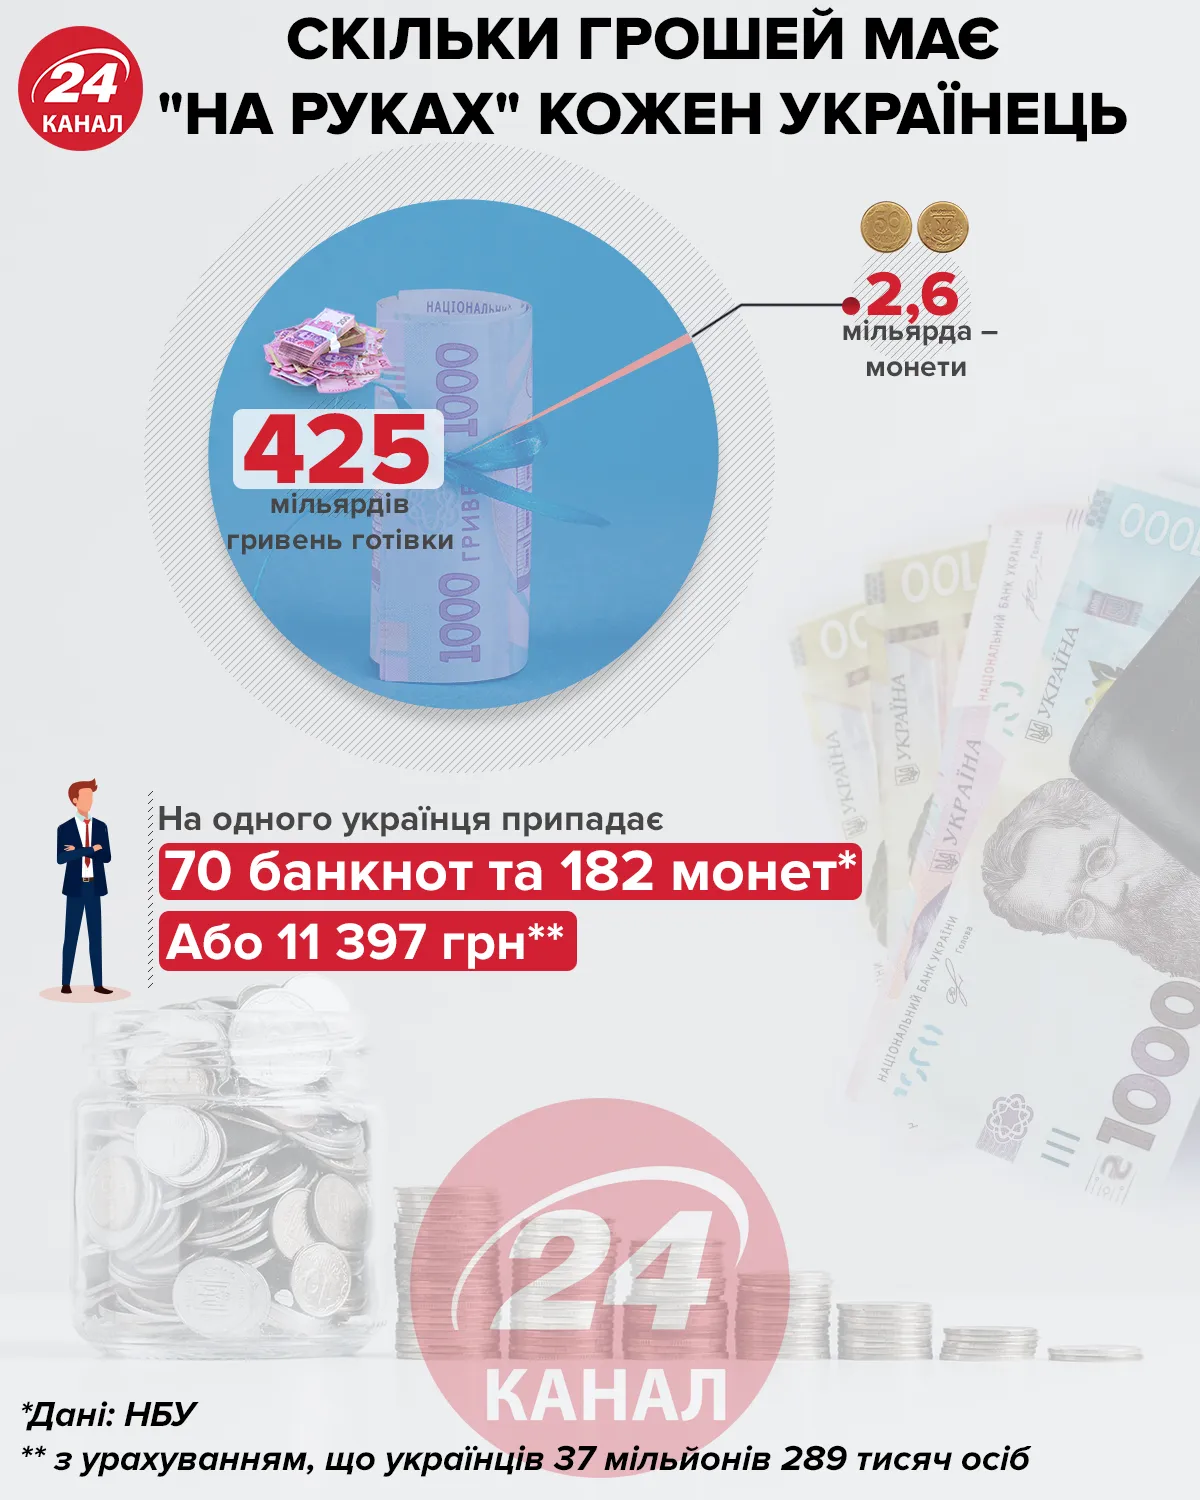 Скільки грошей "на руках" має українець інфографіка 24 каналу